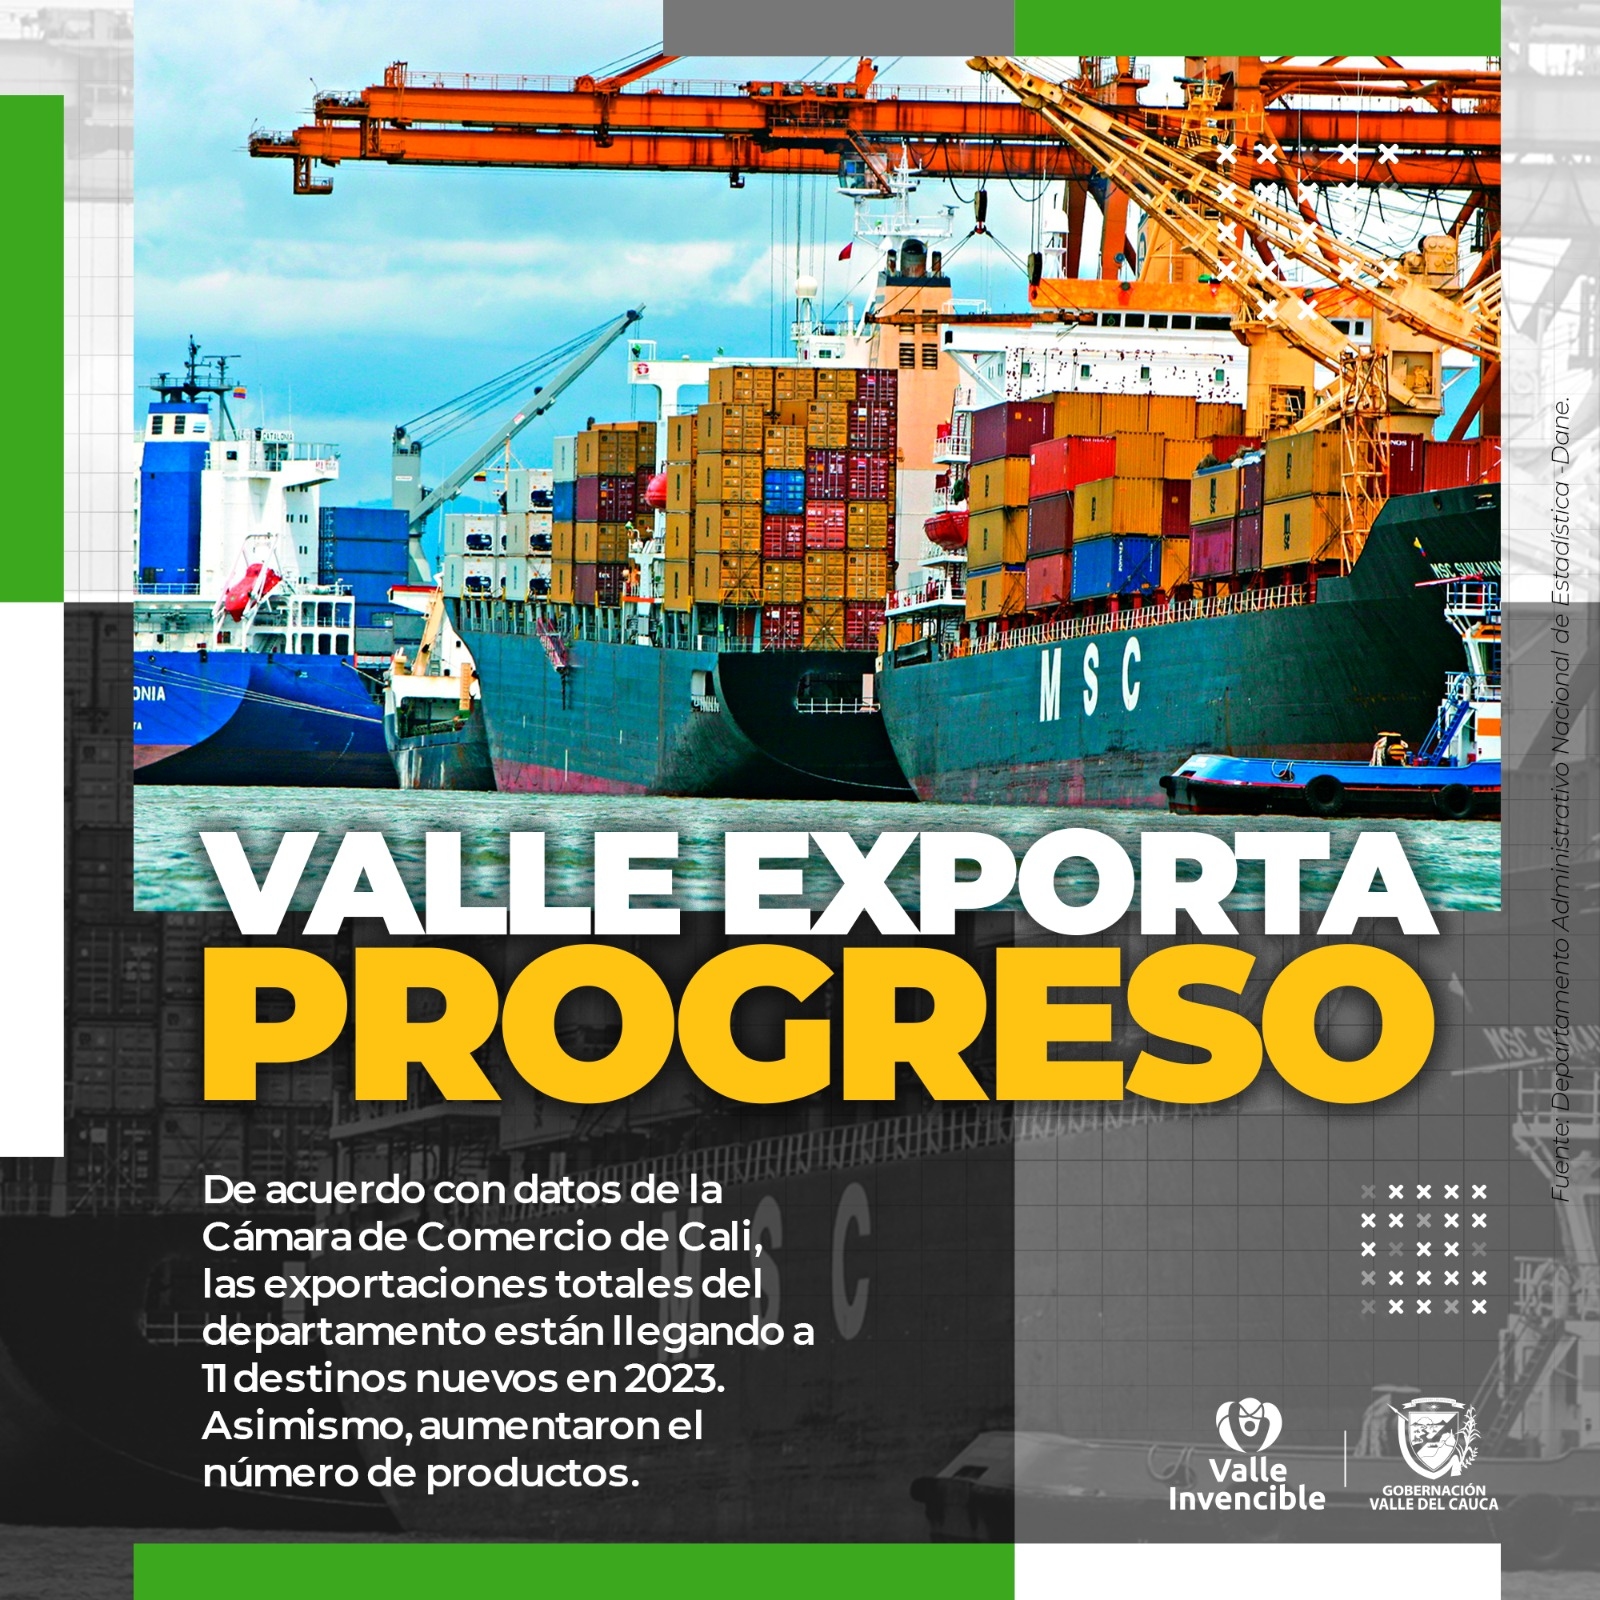 El Valle se sigue consolidando en los mercados internacionales, exportaciones aumentaron un 8 % en el primer trimestre de 2023